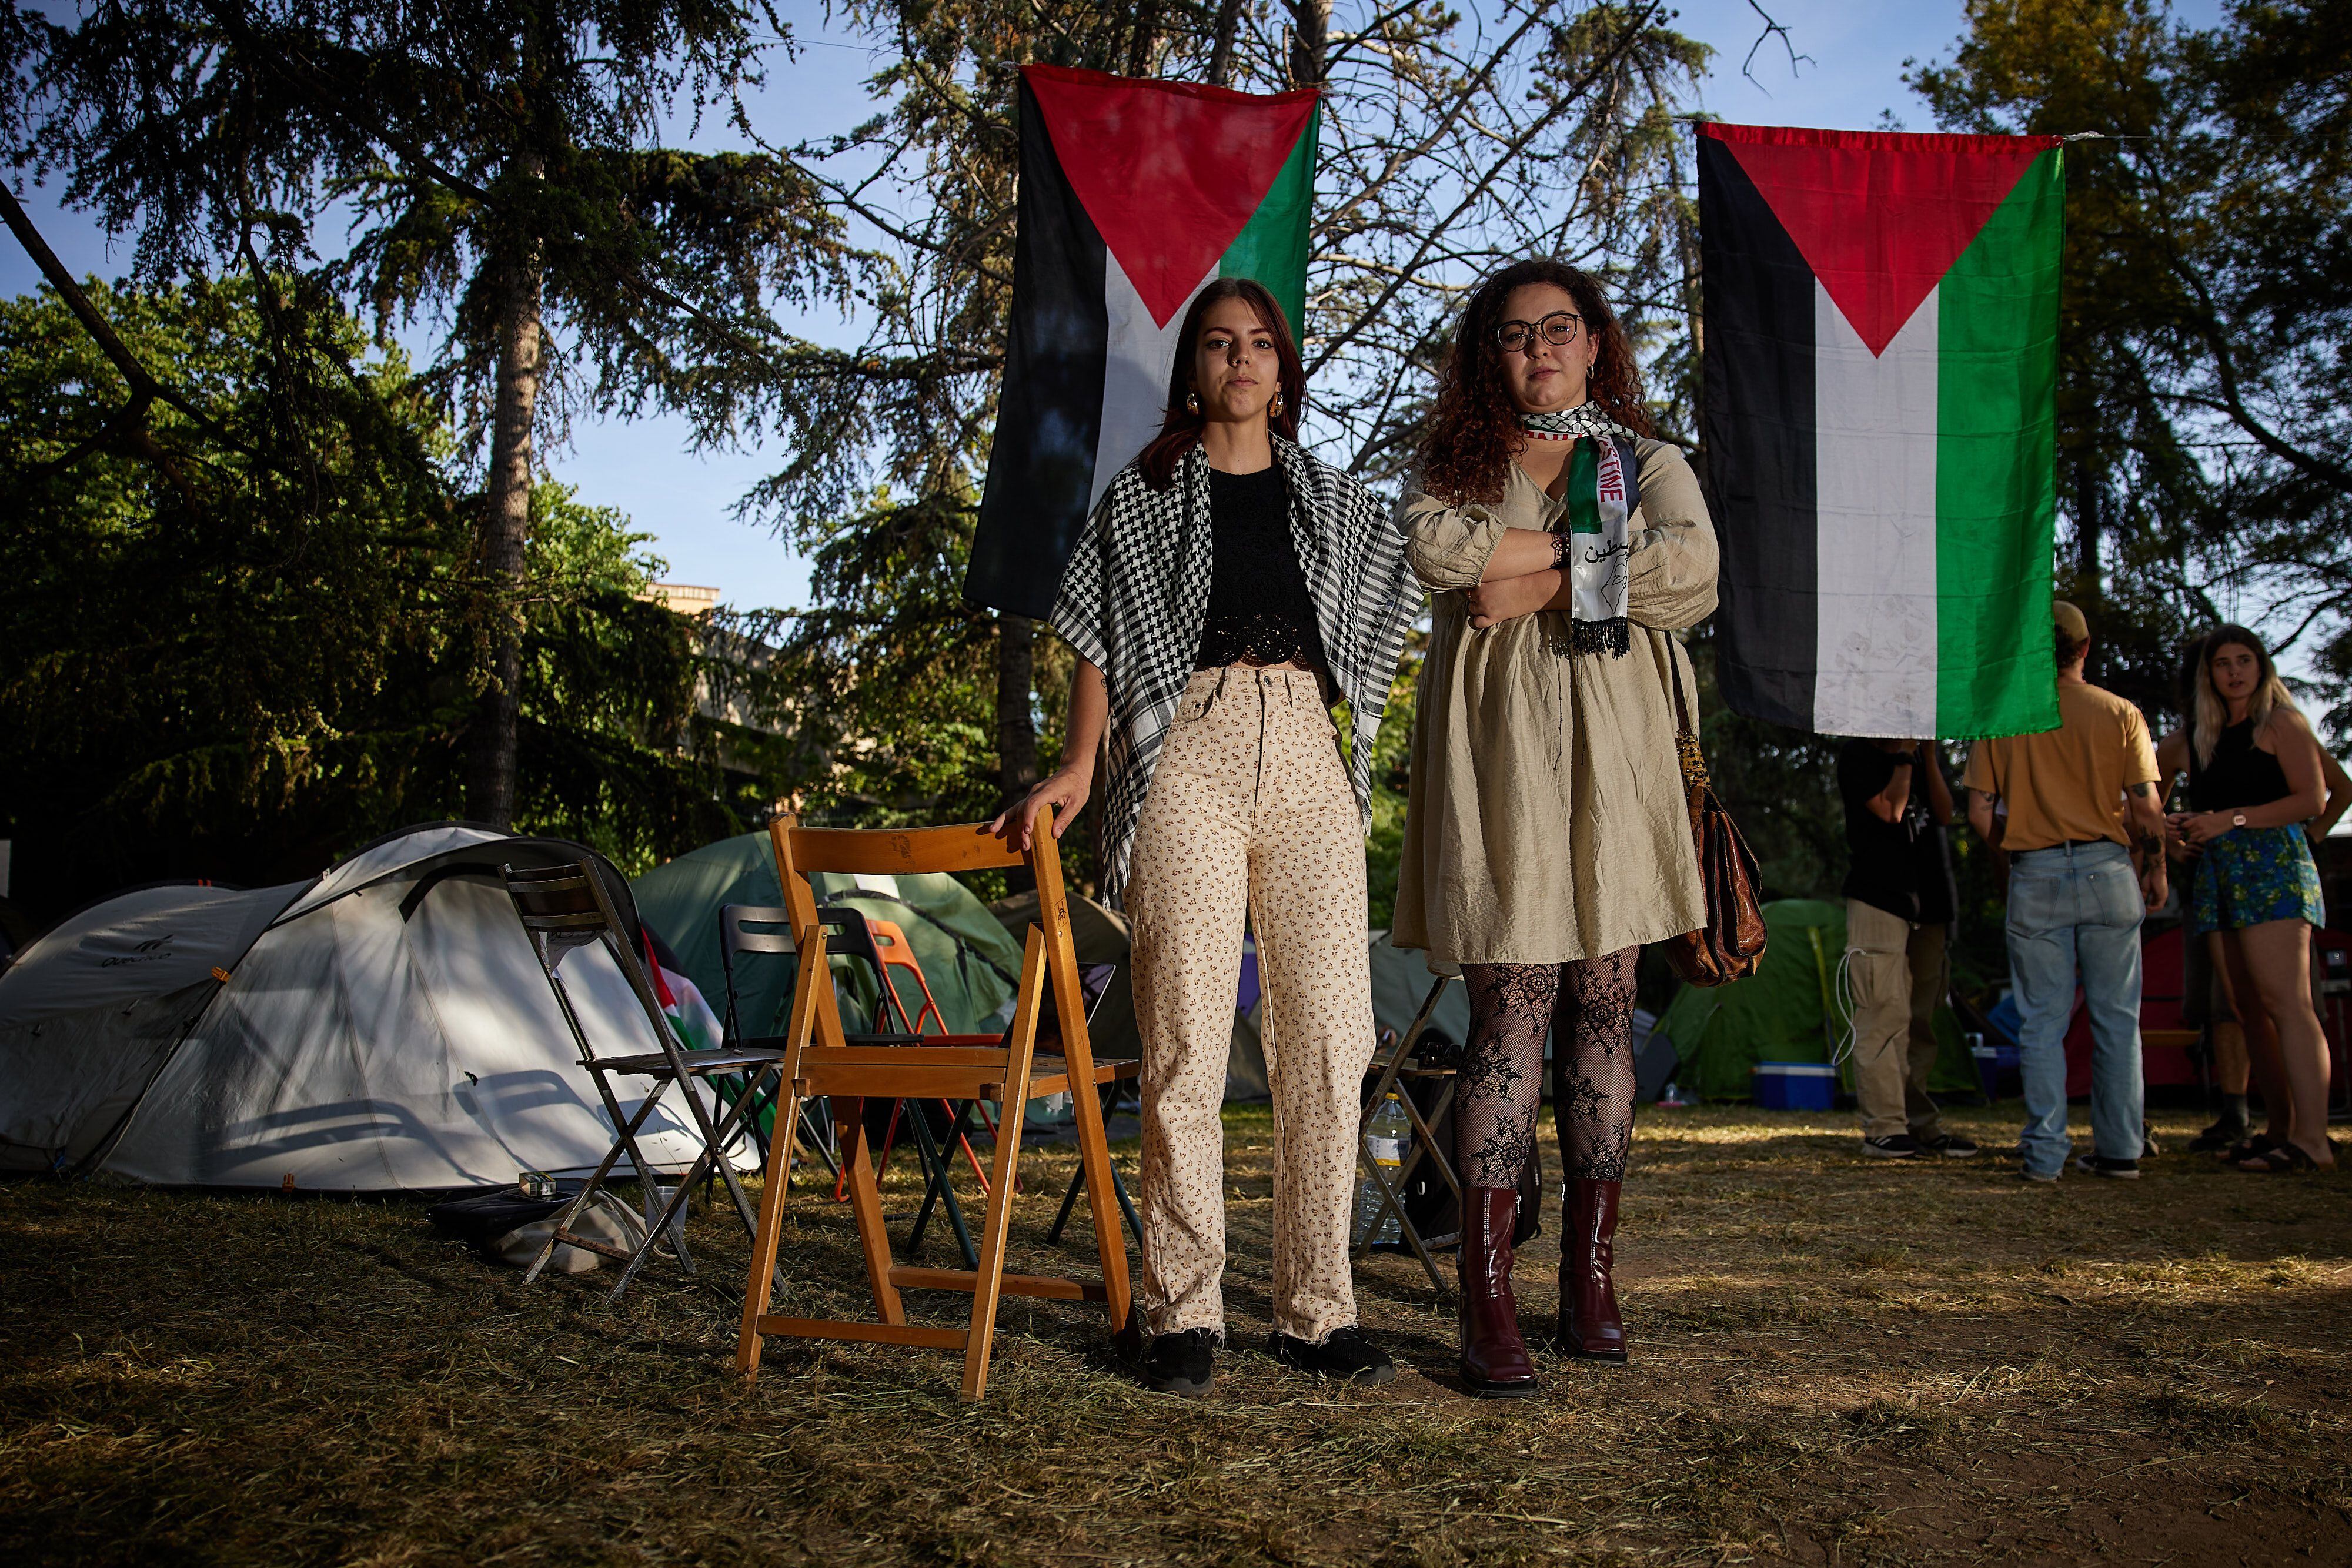 El movimiento estudiantil se revitaliza en los campus universitarios a través de protestas en apoyo de Palestina.